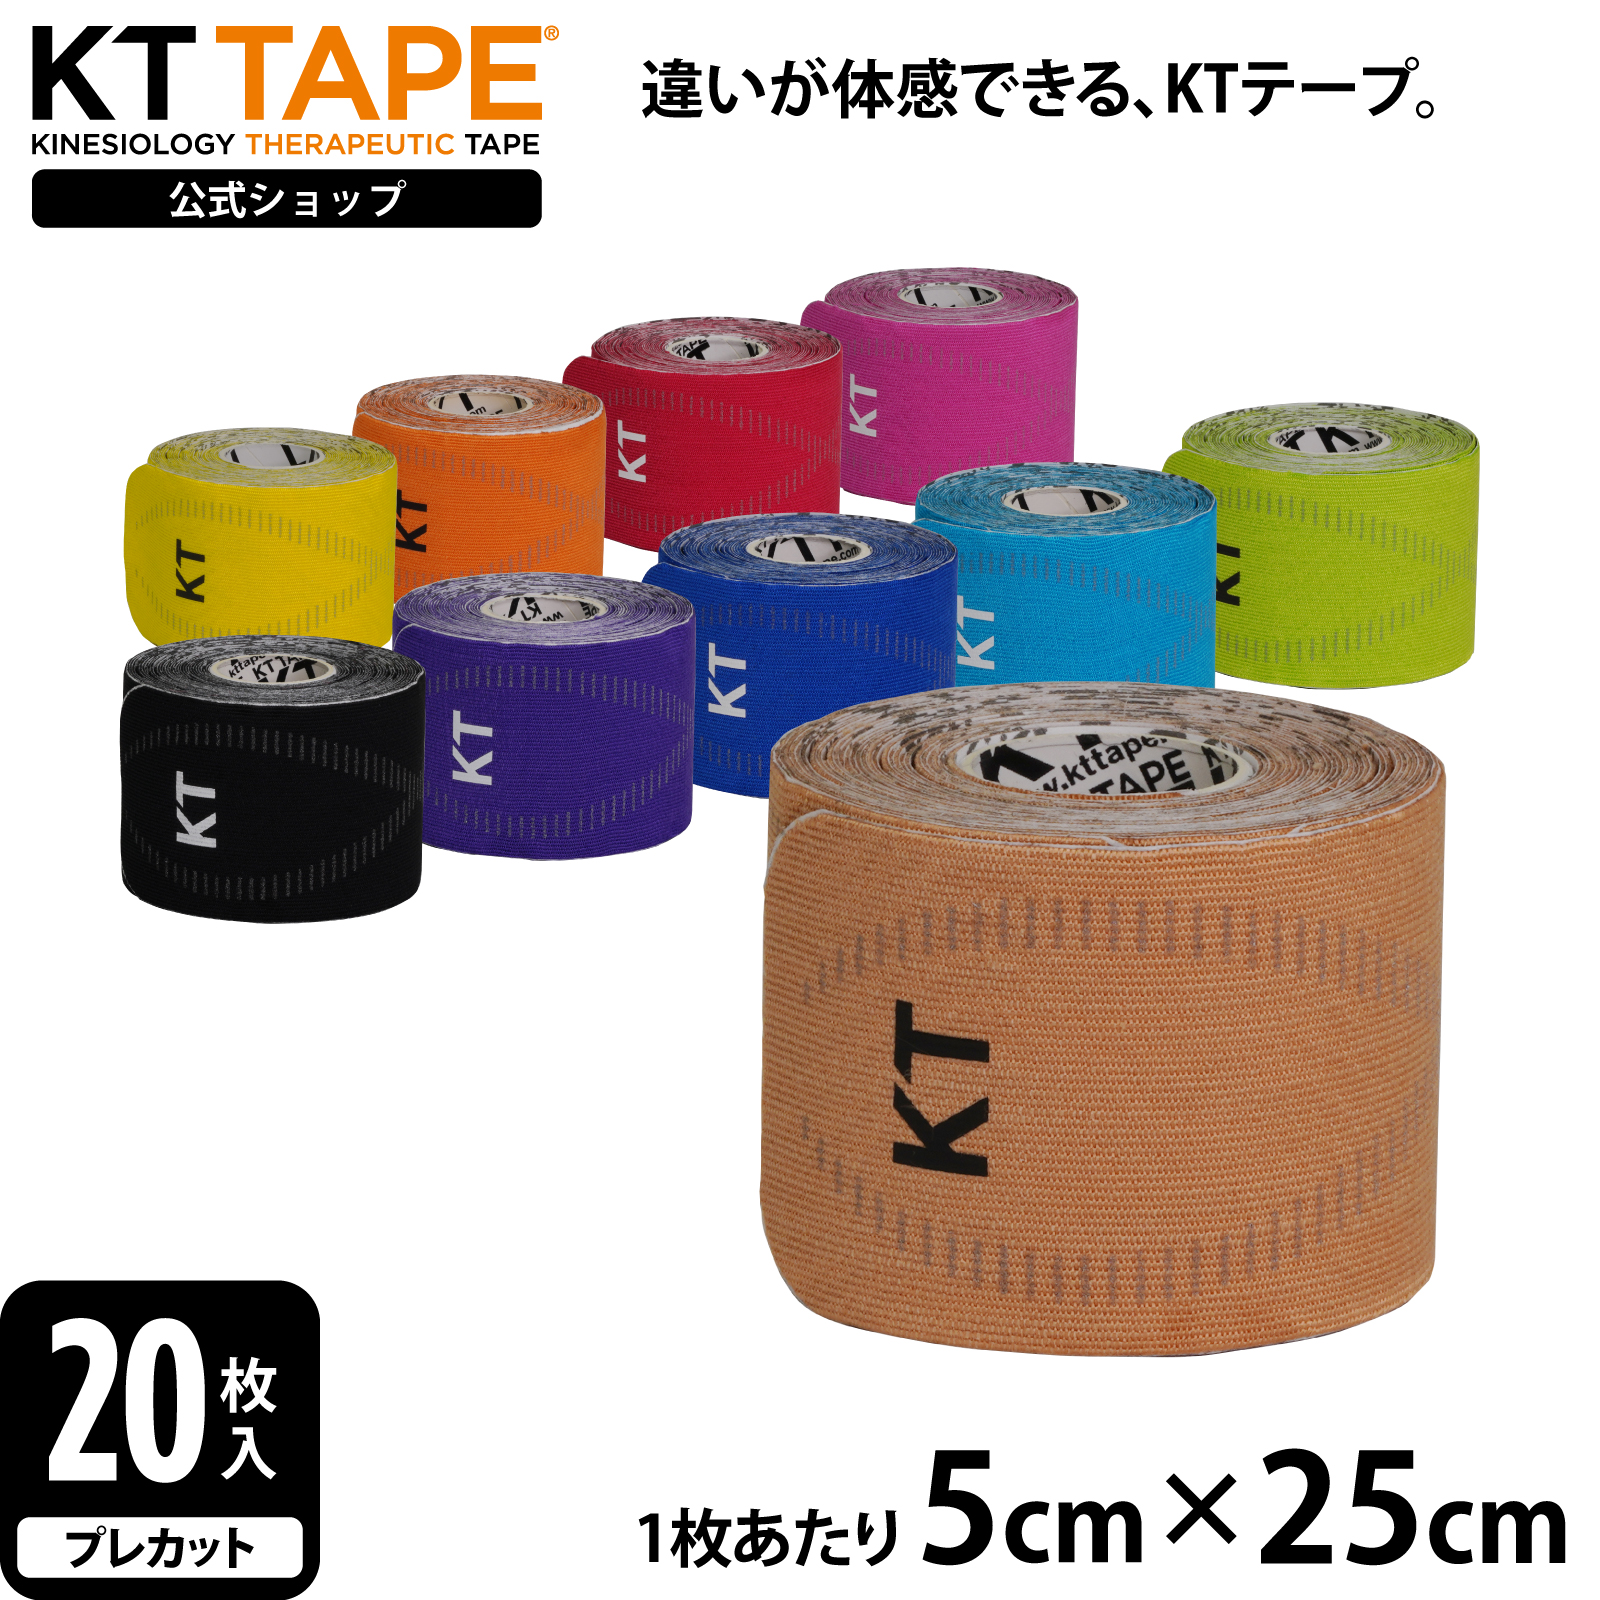 【公式】 KT TAPE ケイティテープ PRO20 20枚入り 幅5cm × 長さ25cm 携帯保管用ケース付き  プレカットタイプ 10色展開 KTPR20 まとめ割クーポン発行中! USB Online 